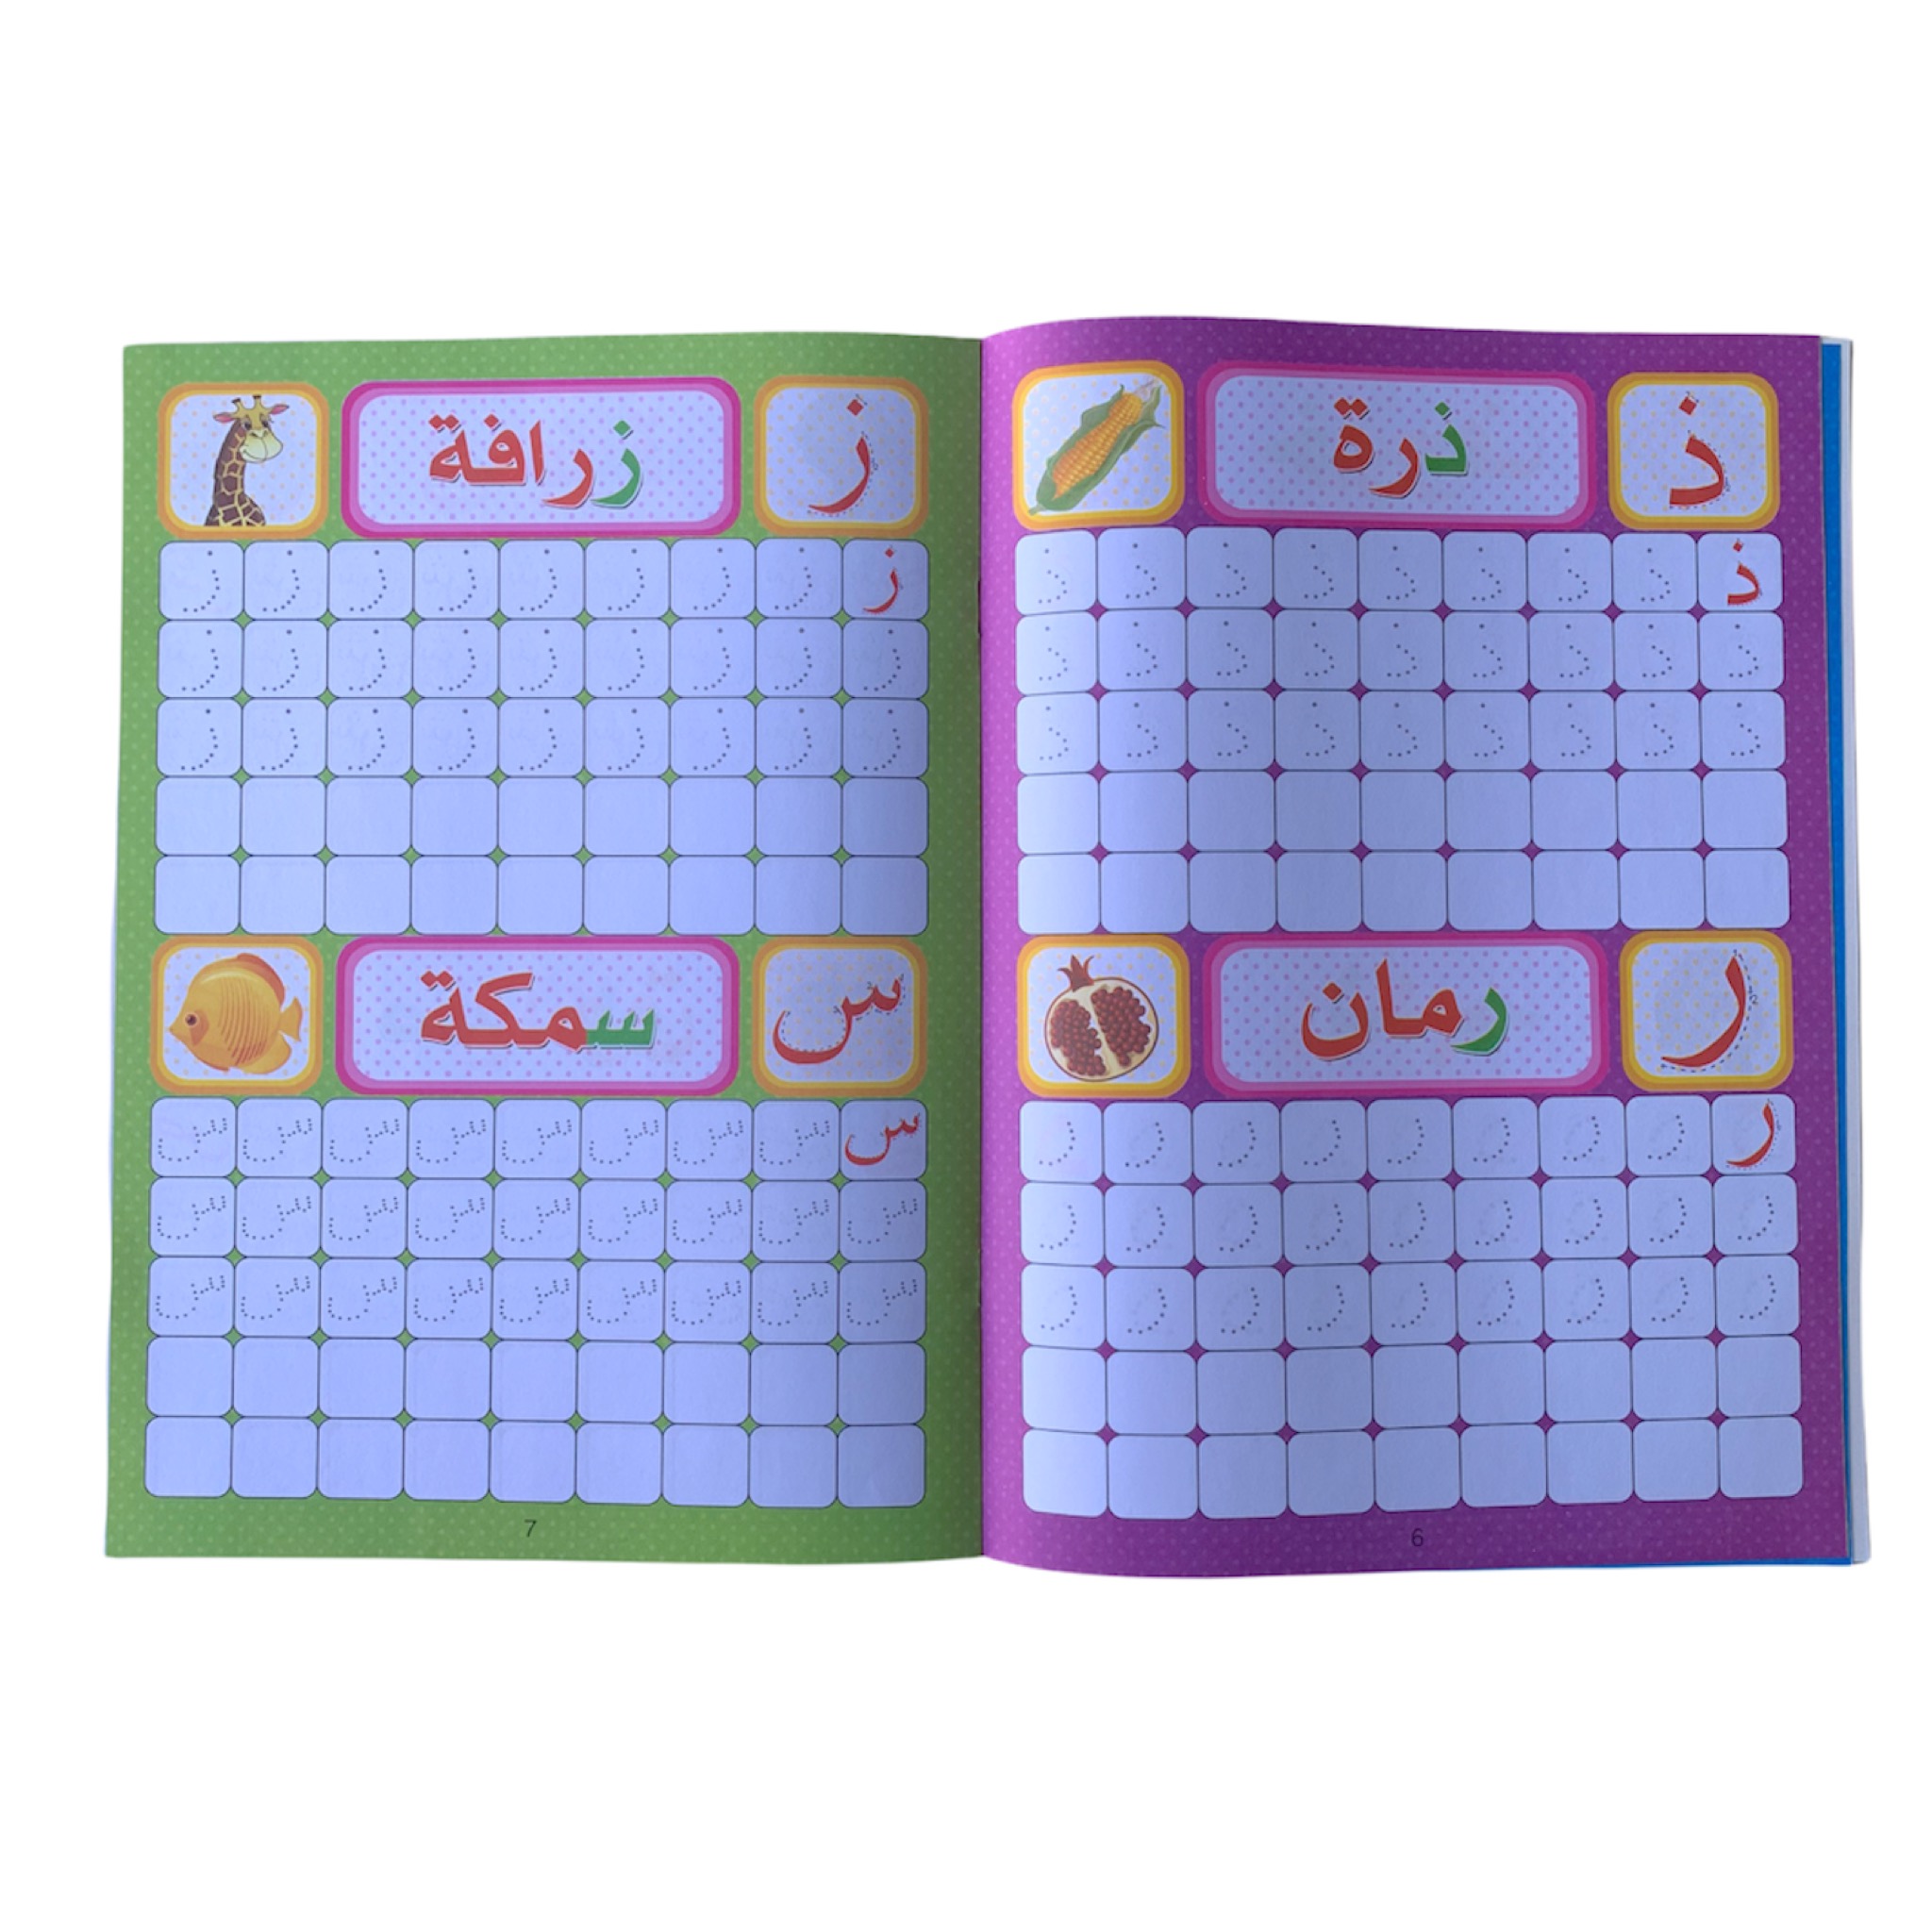 مجموعة التدريب على كتابة الحروف والارقام العربية والانجليزية